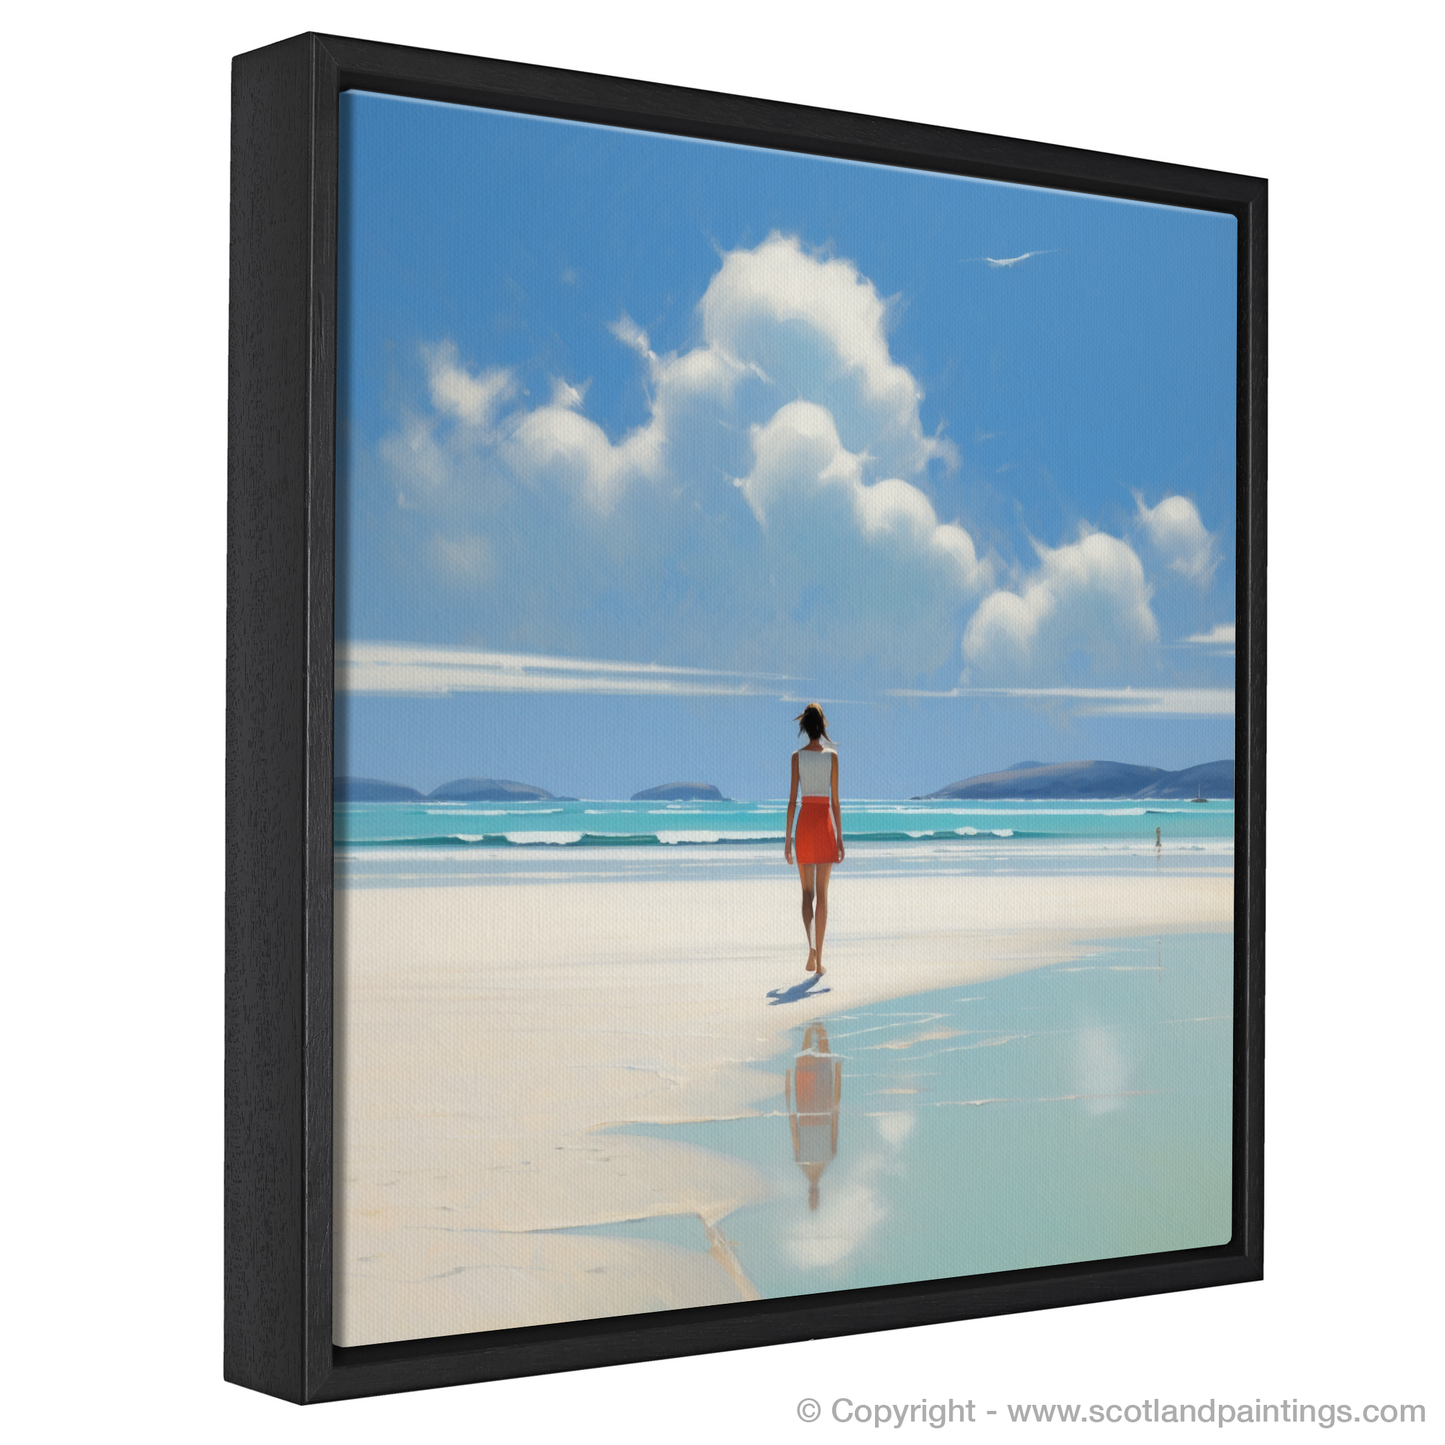 Painting and Art Print of Luskentyre Beach, Isle of Harris entitled "Serene Stroll on Luskentyre Sands".